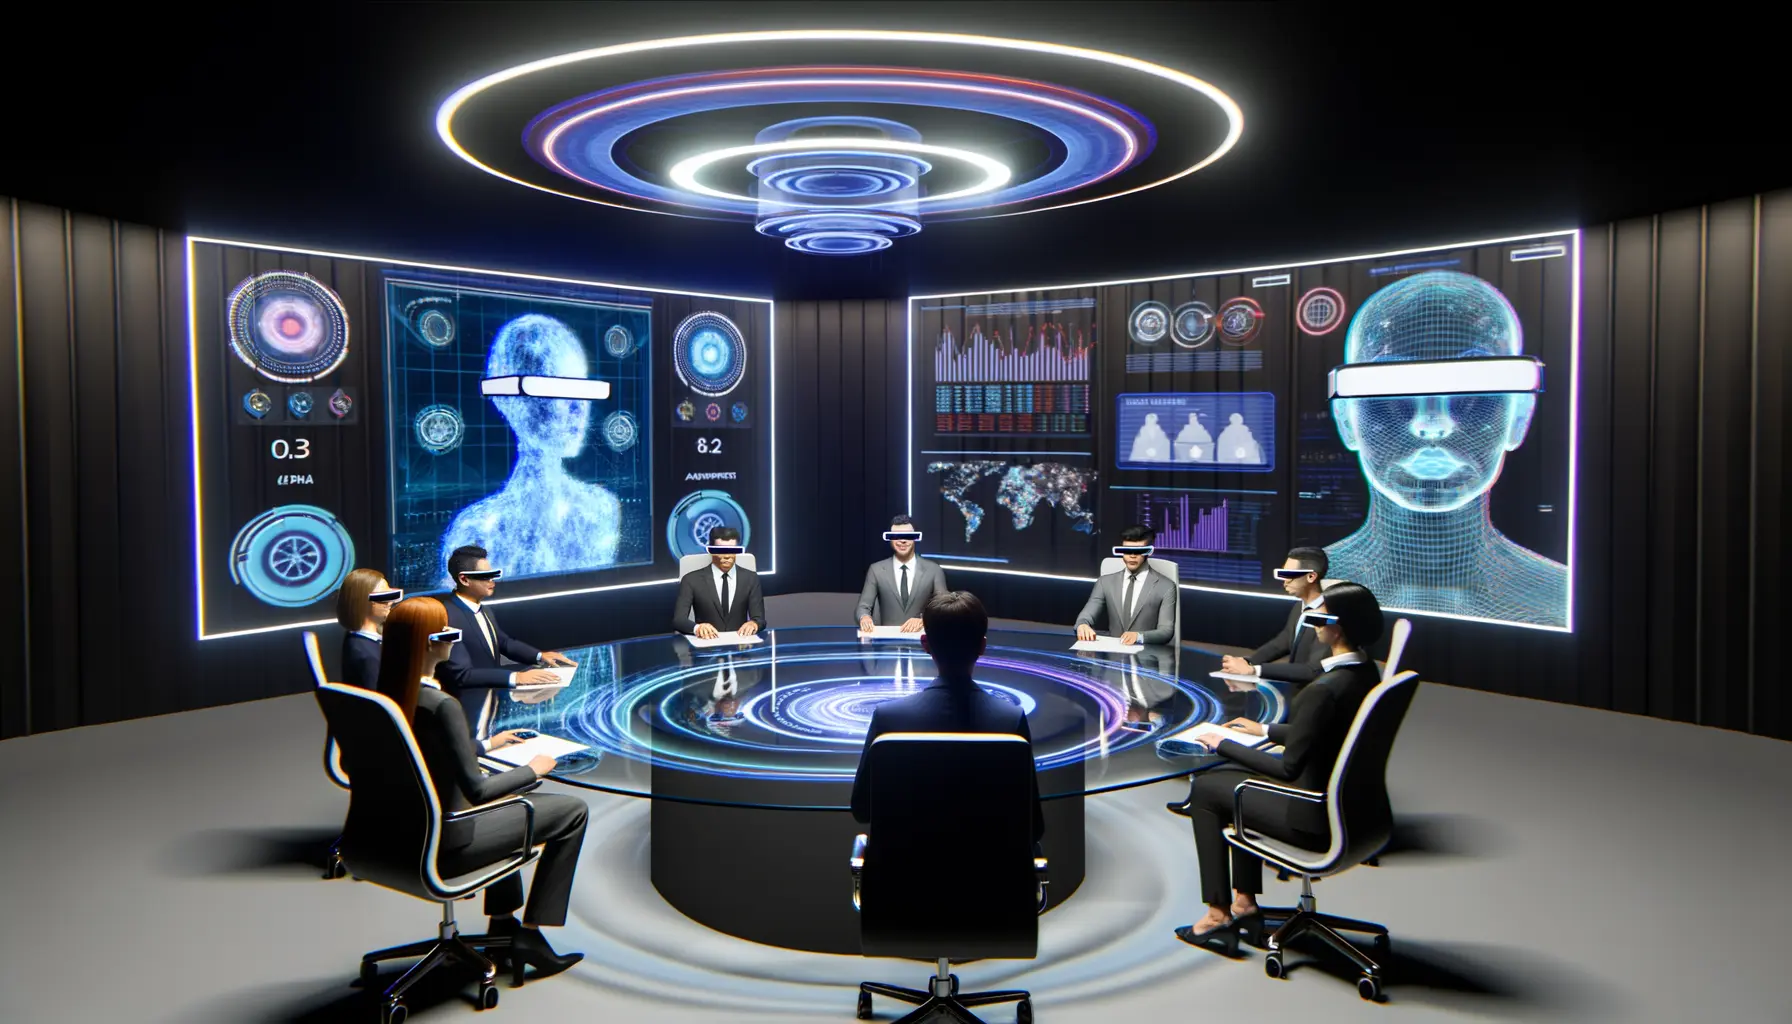 Konferenzzimmer der Zukunft mit virtuellen 3D-Präsentationen